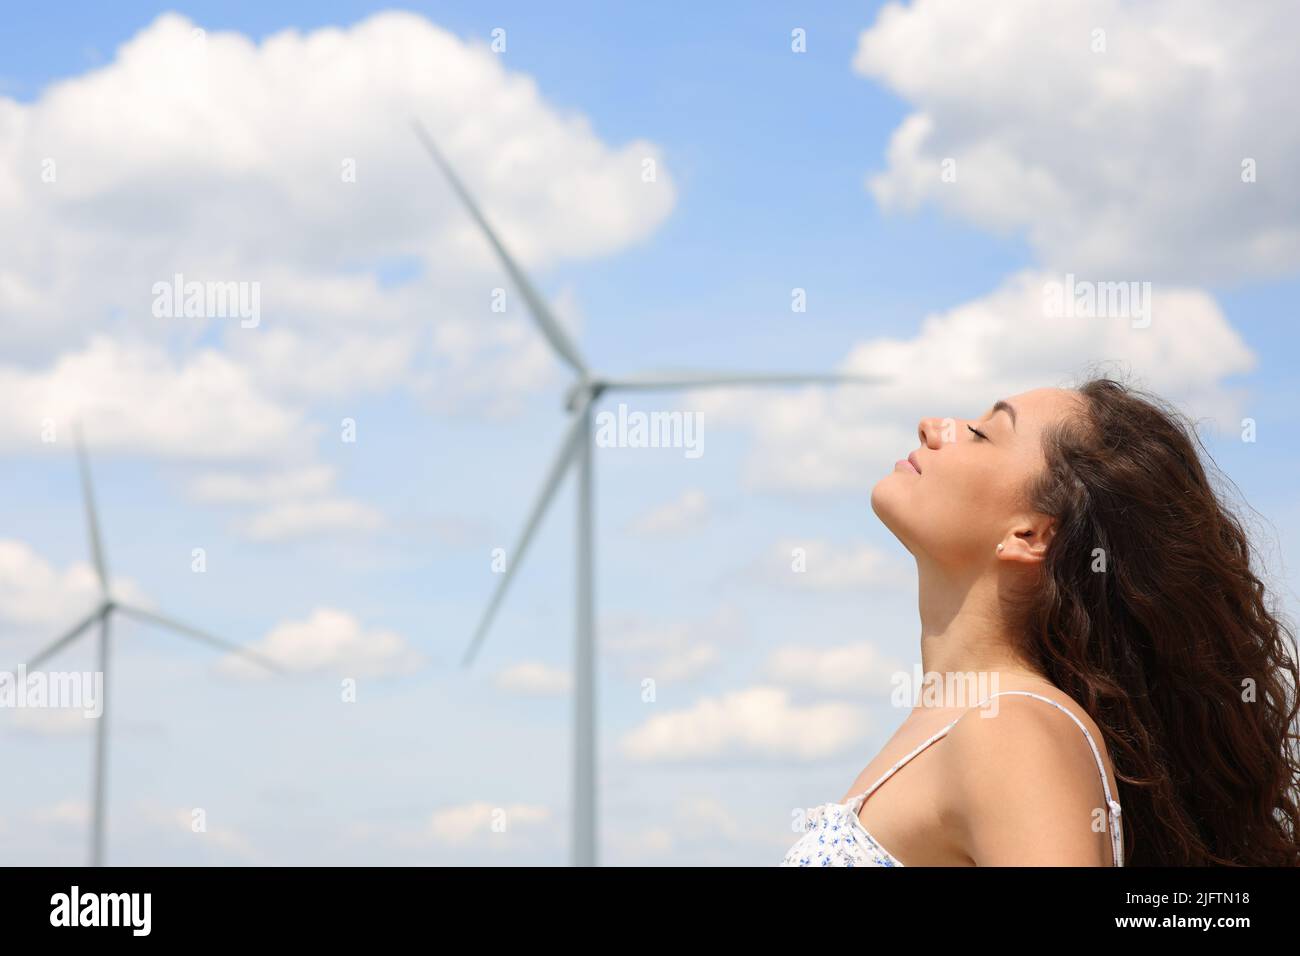 Profil d'une femme détendue respirant de l'air frais dans une ferme éolienne Banque D'Images